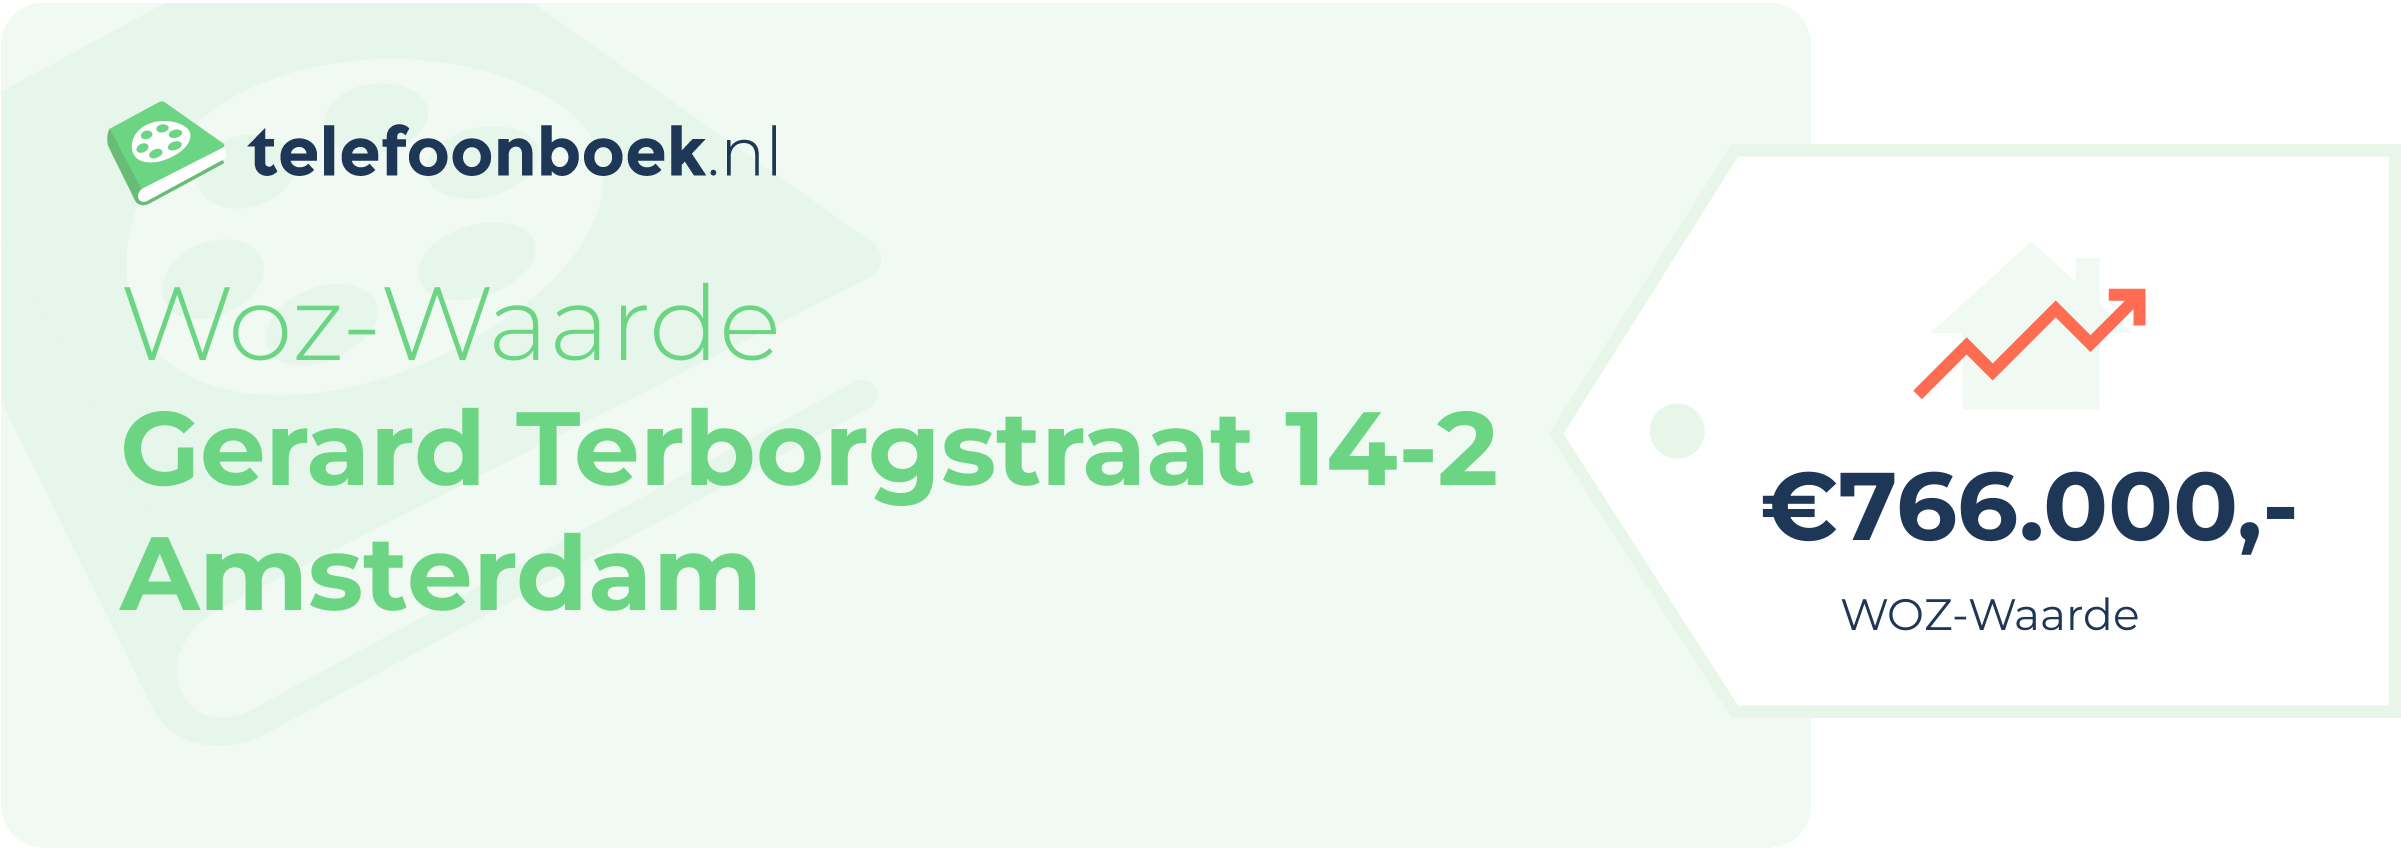 WOZ-waarde Gerard Terborgstraat 14-2 Amsterdam